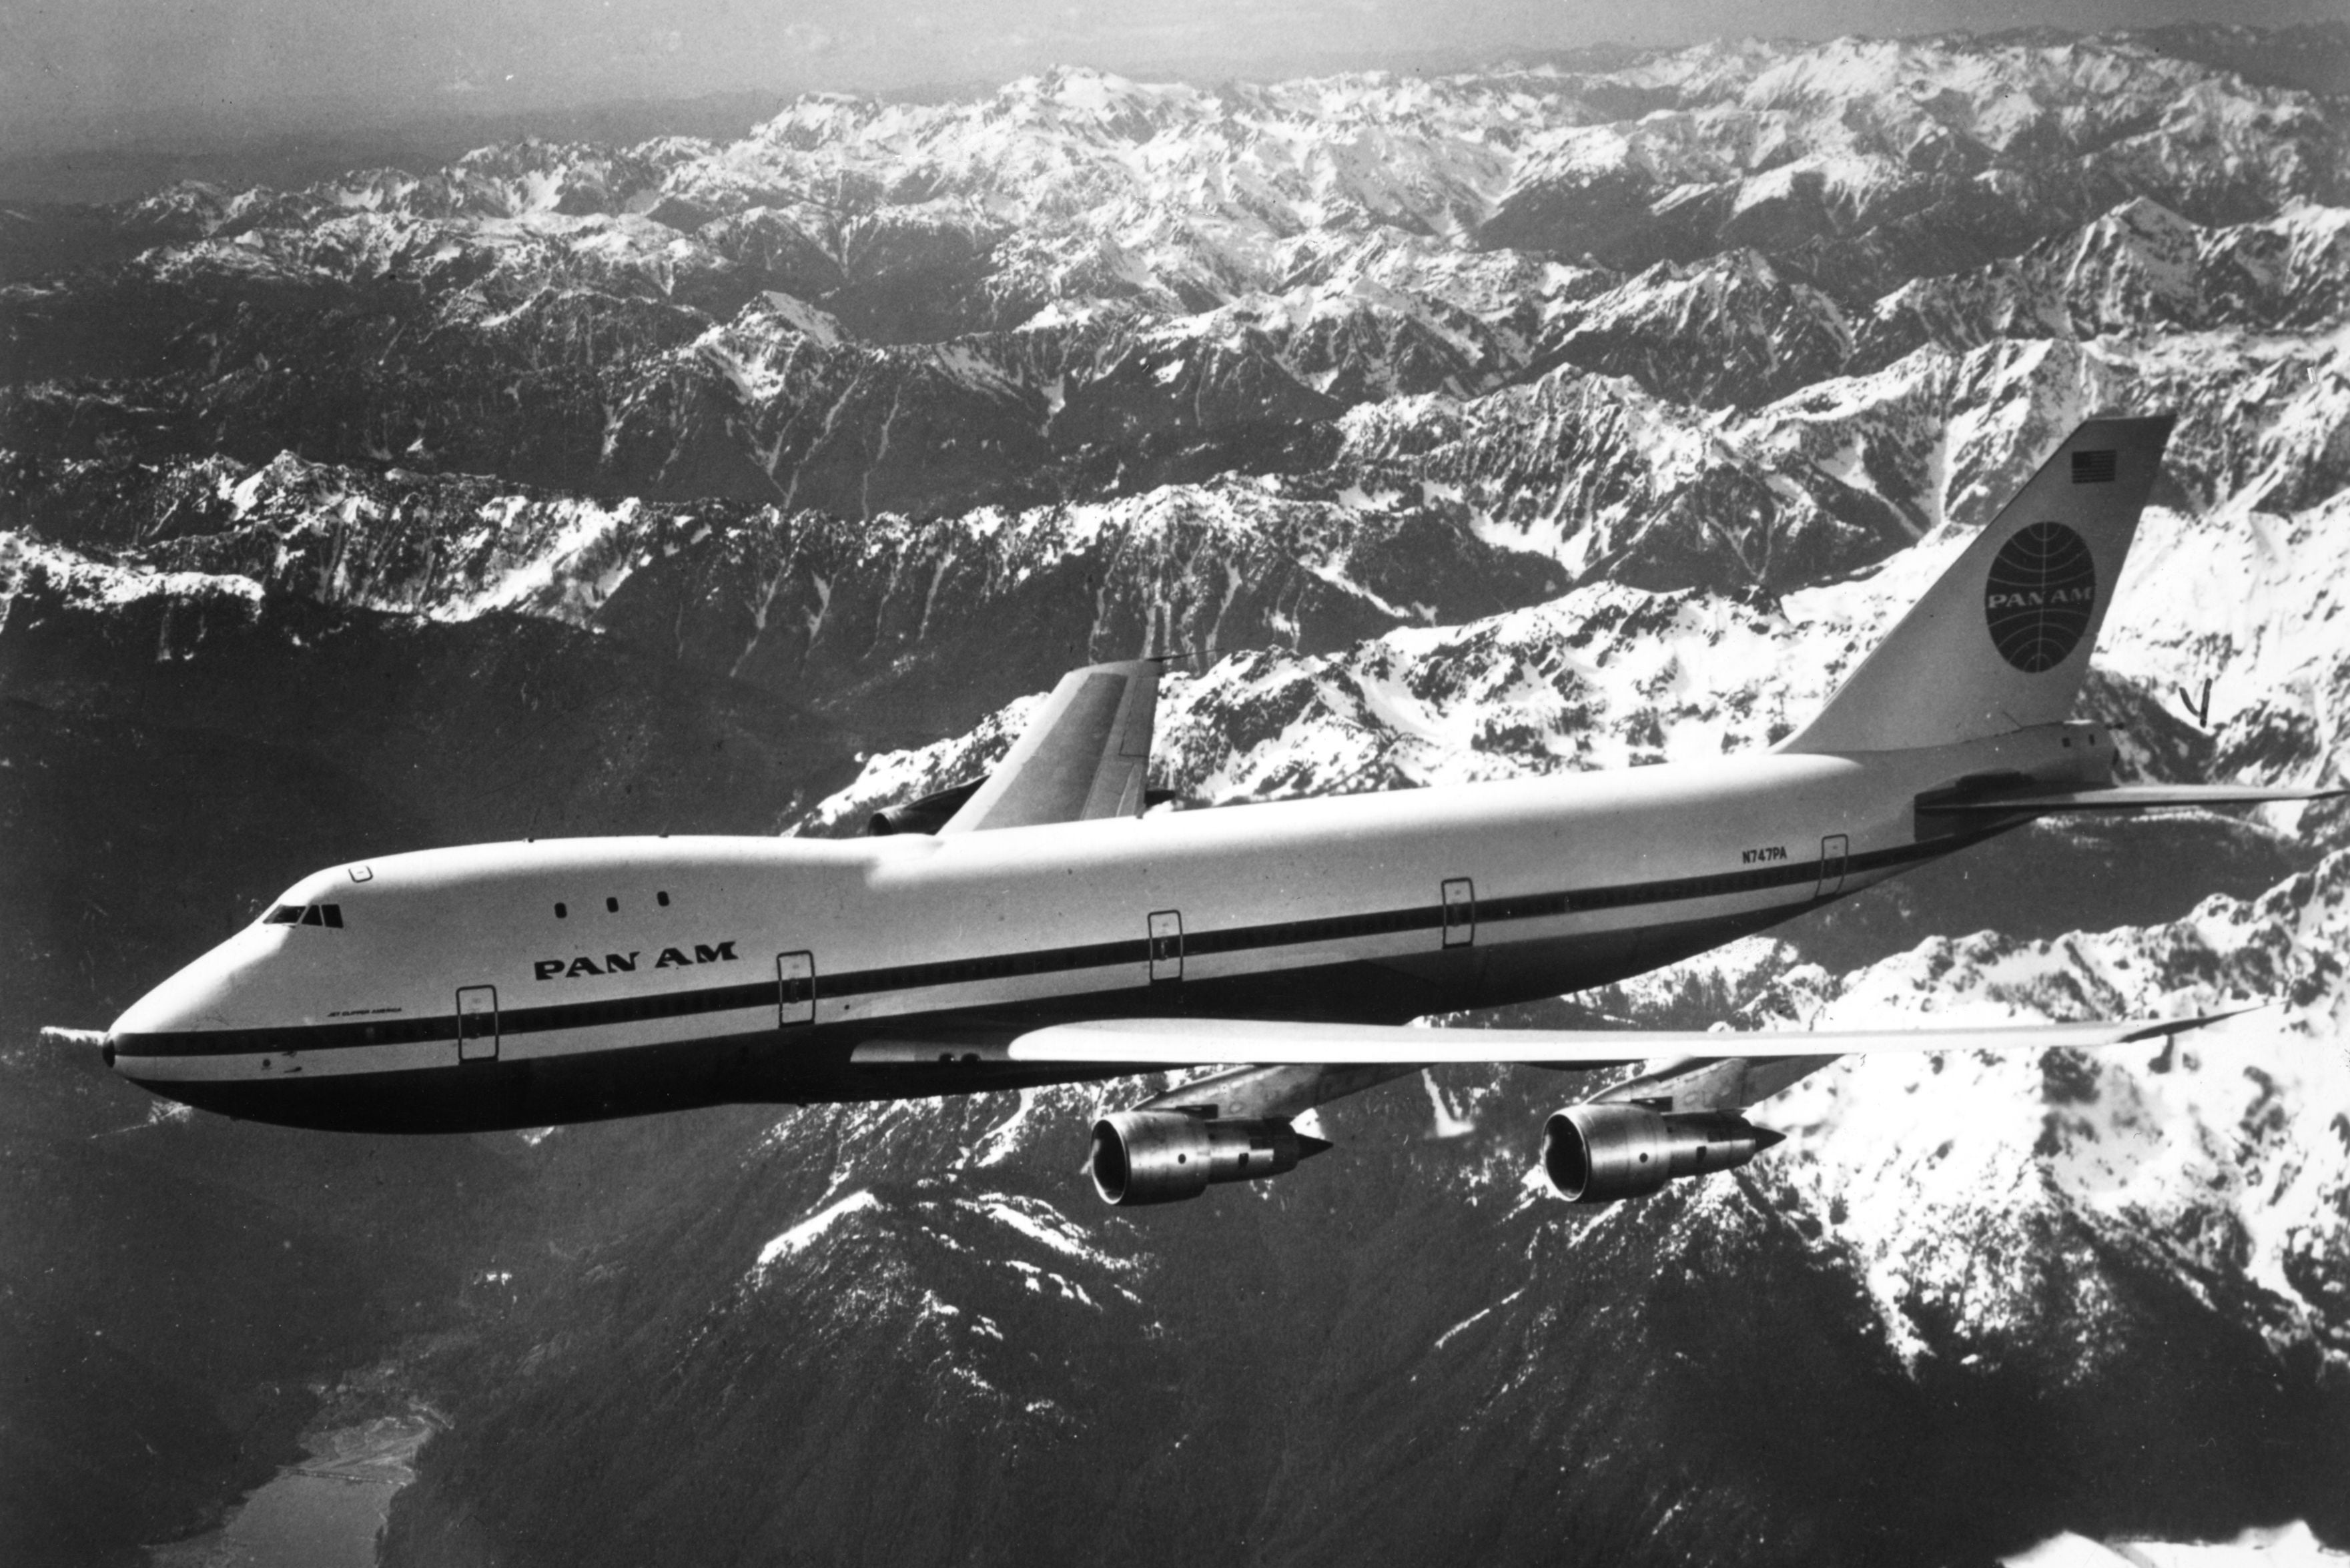 Globe-girdling: A Pan Am Boeing 747